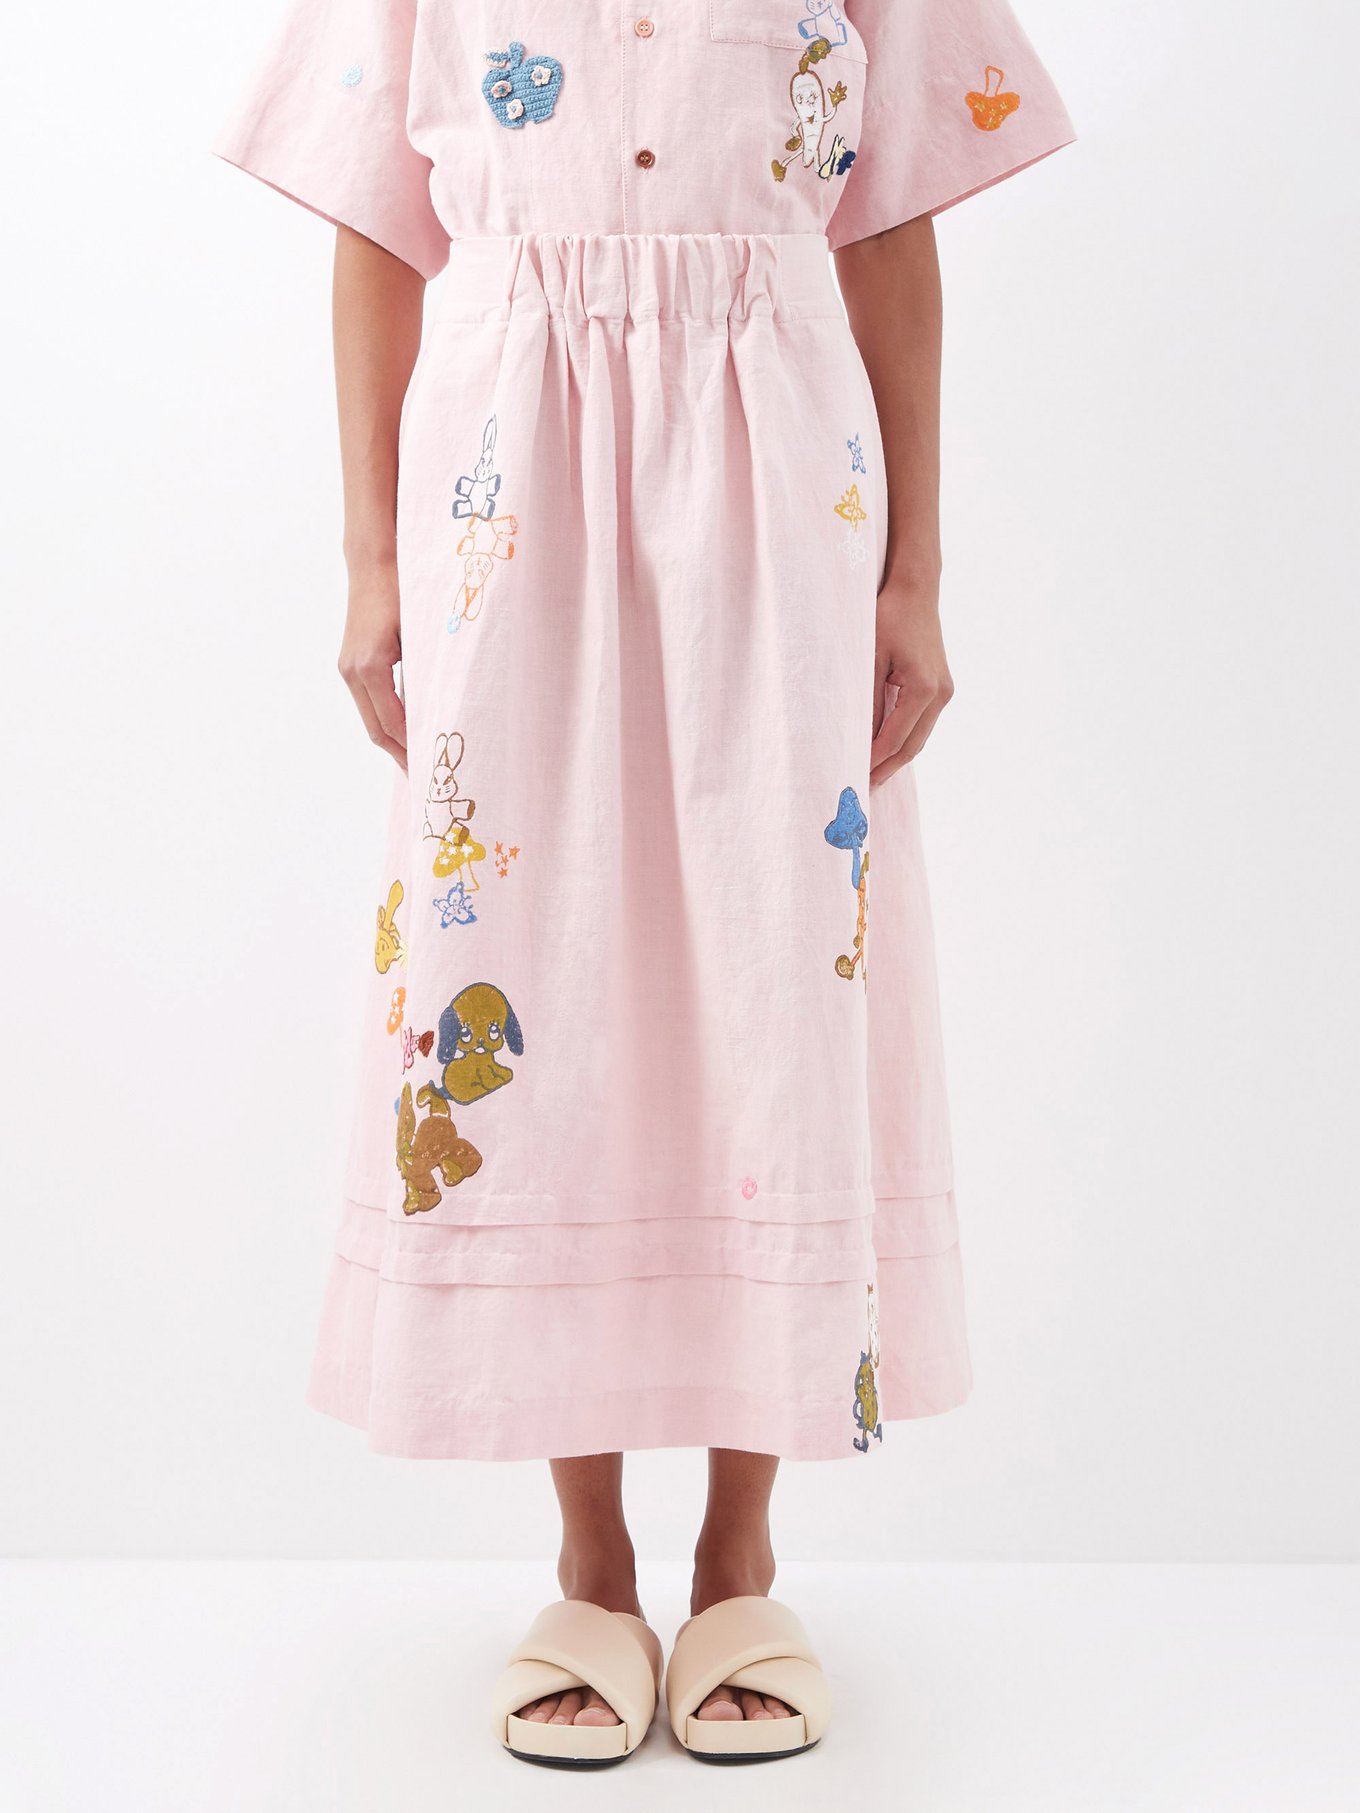 Todash-embroidered organic cotton midi skirt | Story mfg.